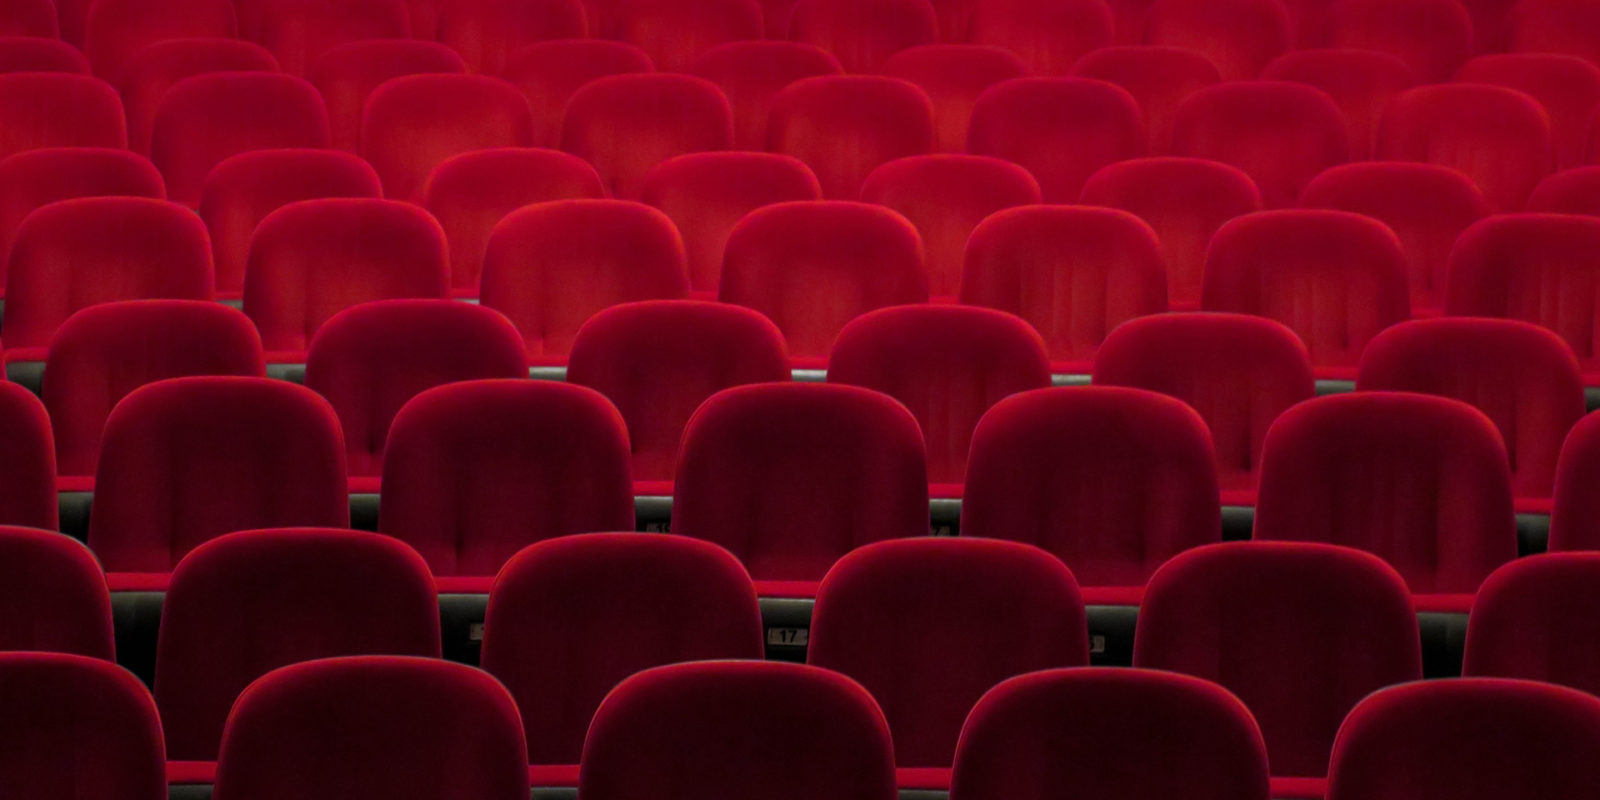 TED Talks empty auditorium